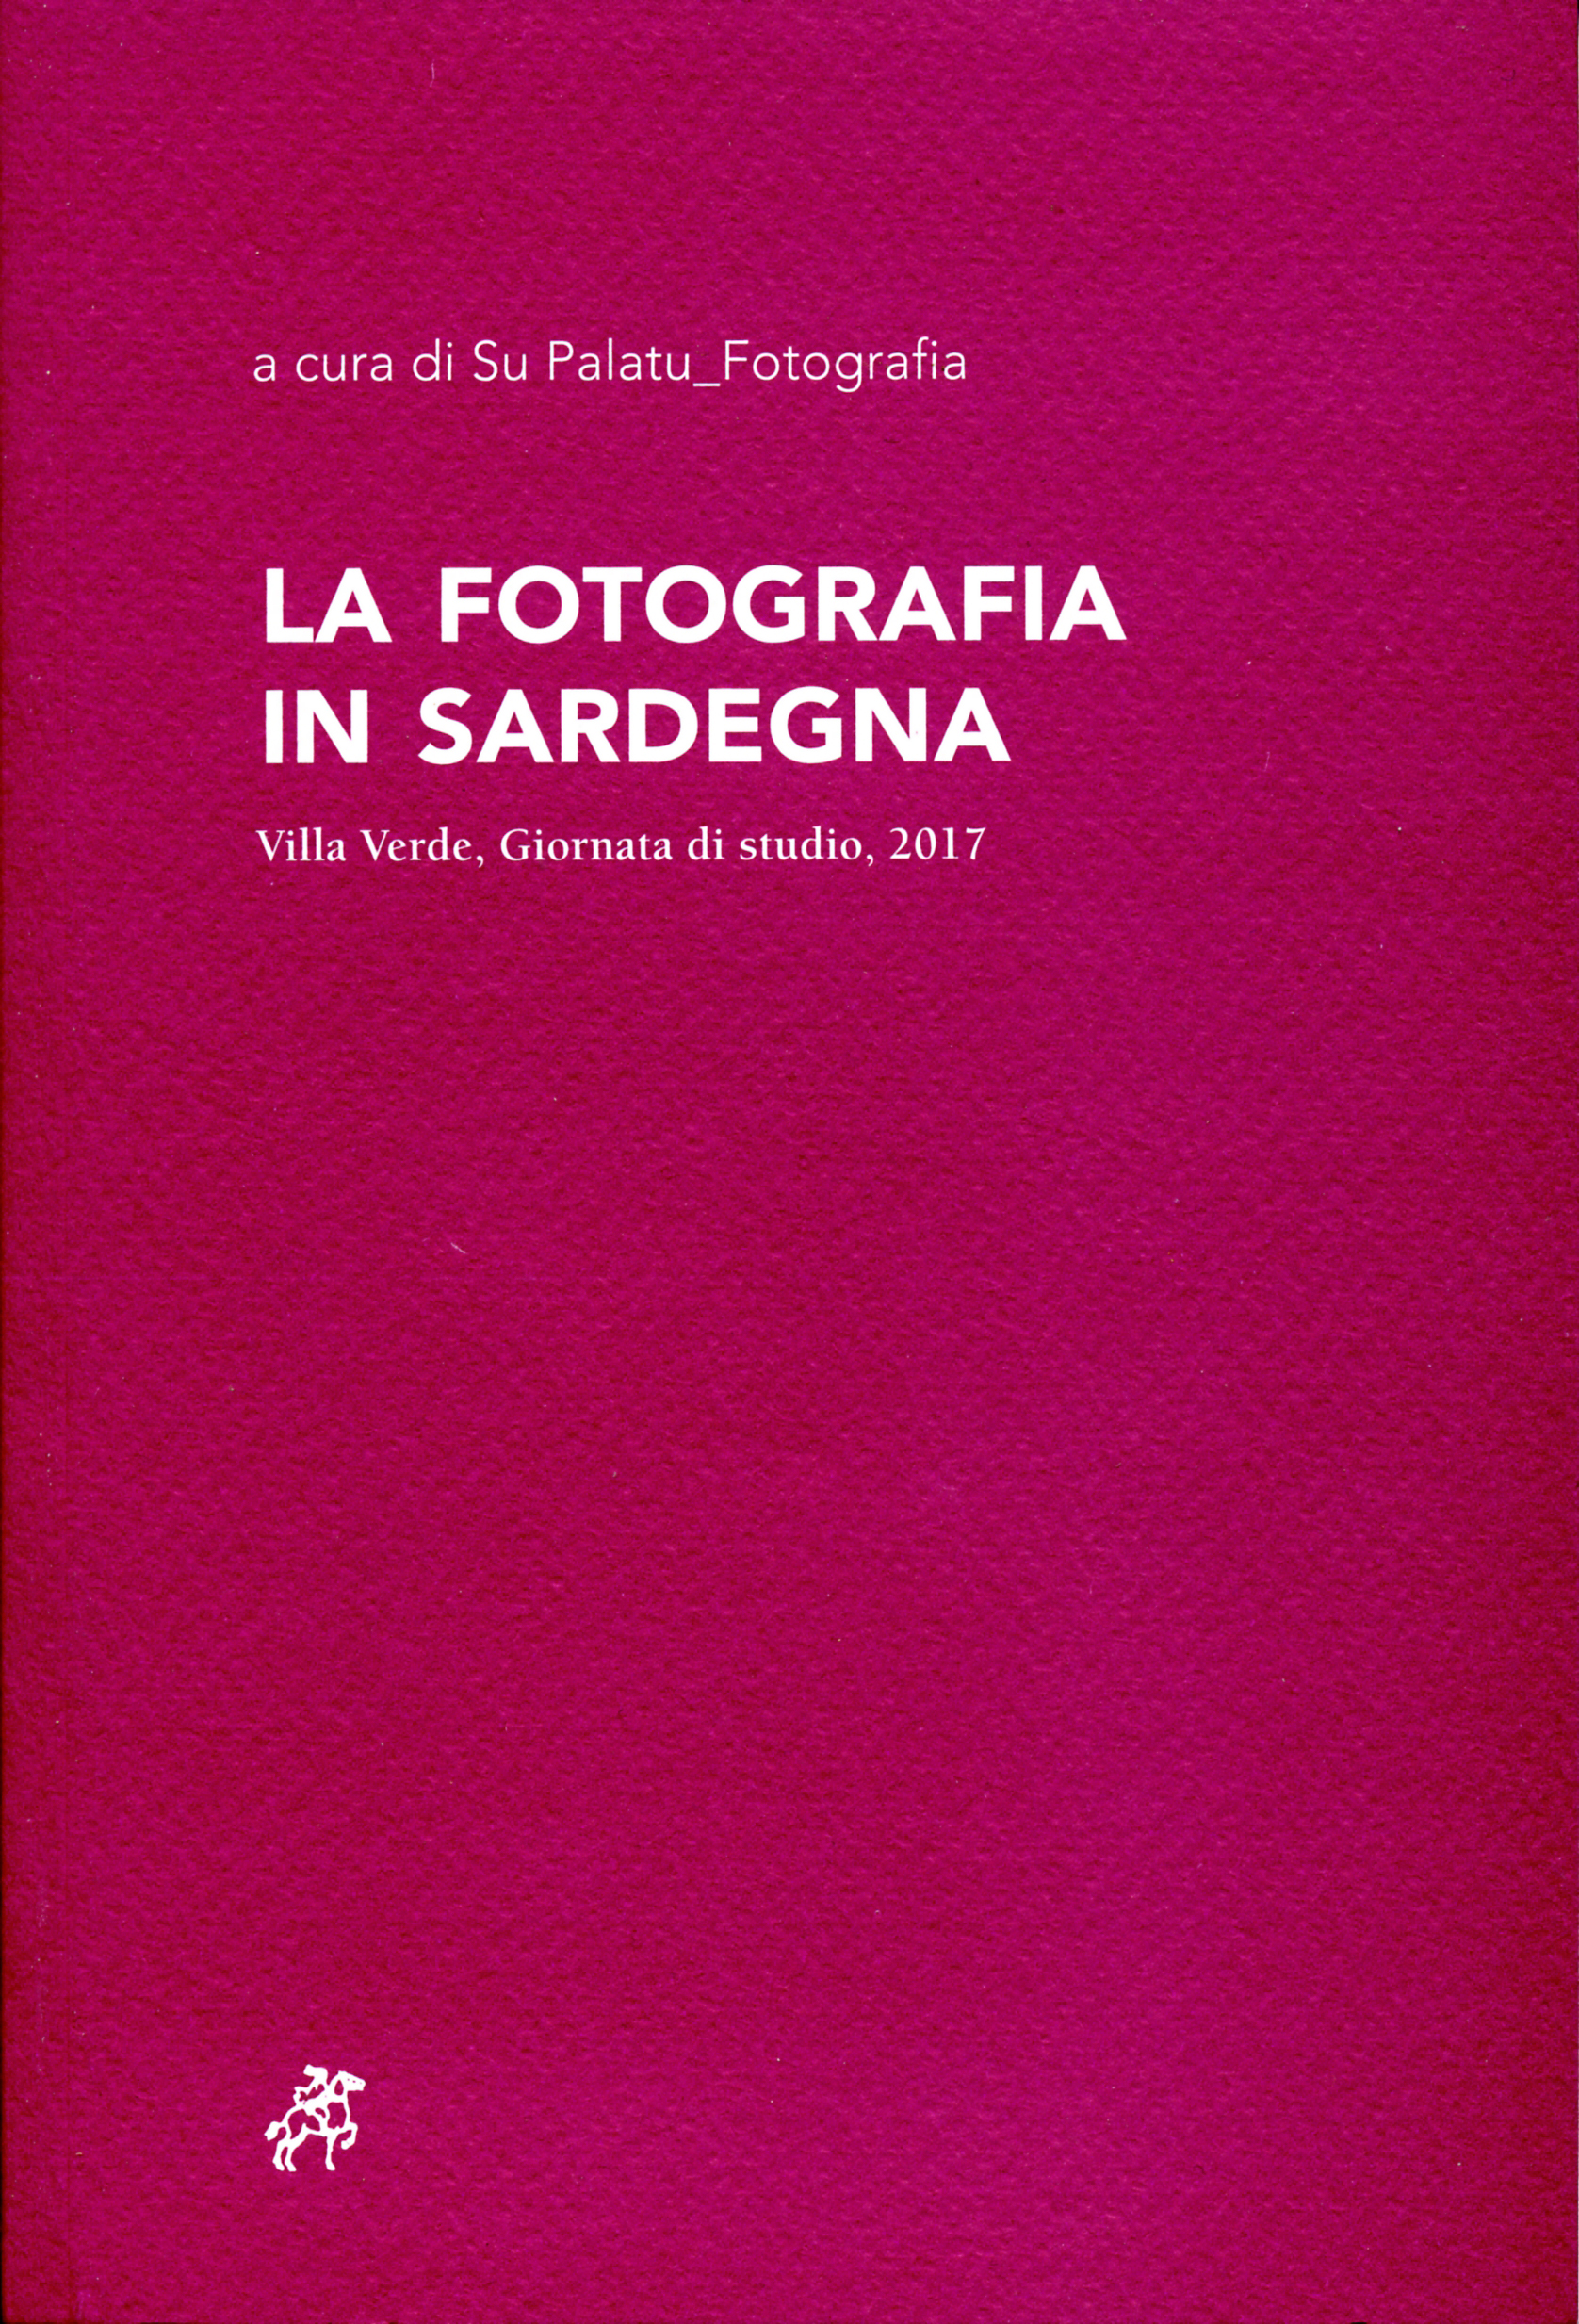 La fotografia in Sardegna, atti della giornata di studio a Villa Verde del 28 ottobre 2017, a cura di Su Palatu_Fotografia, Soter Editrice, Vinnanova MOnteleone, 2018